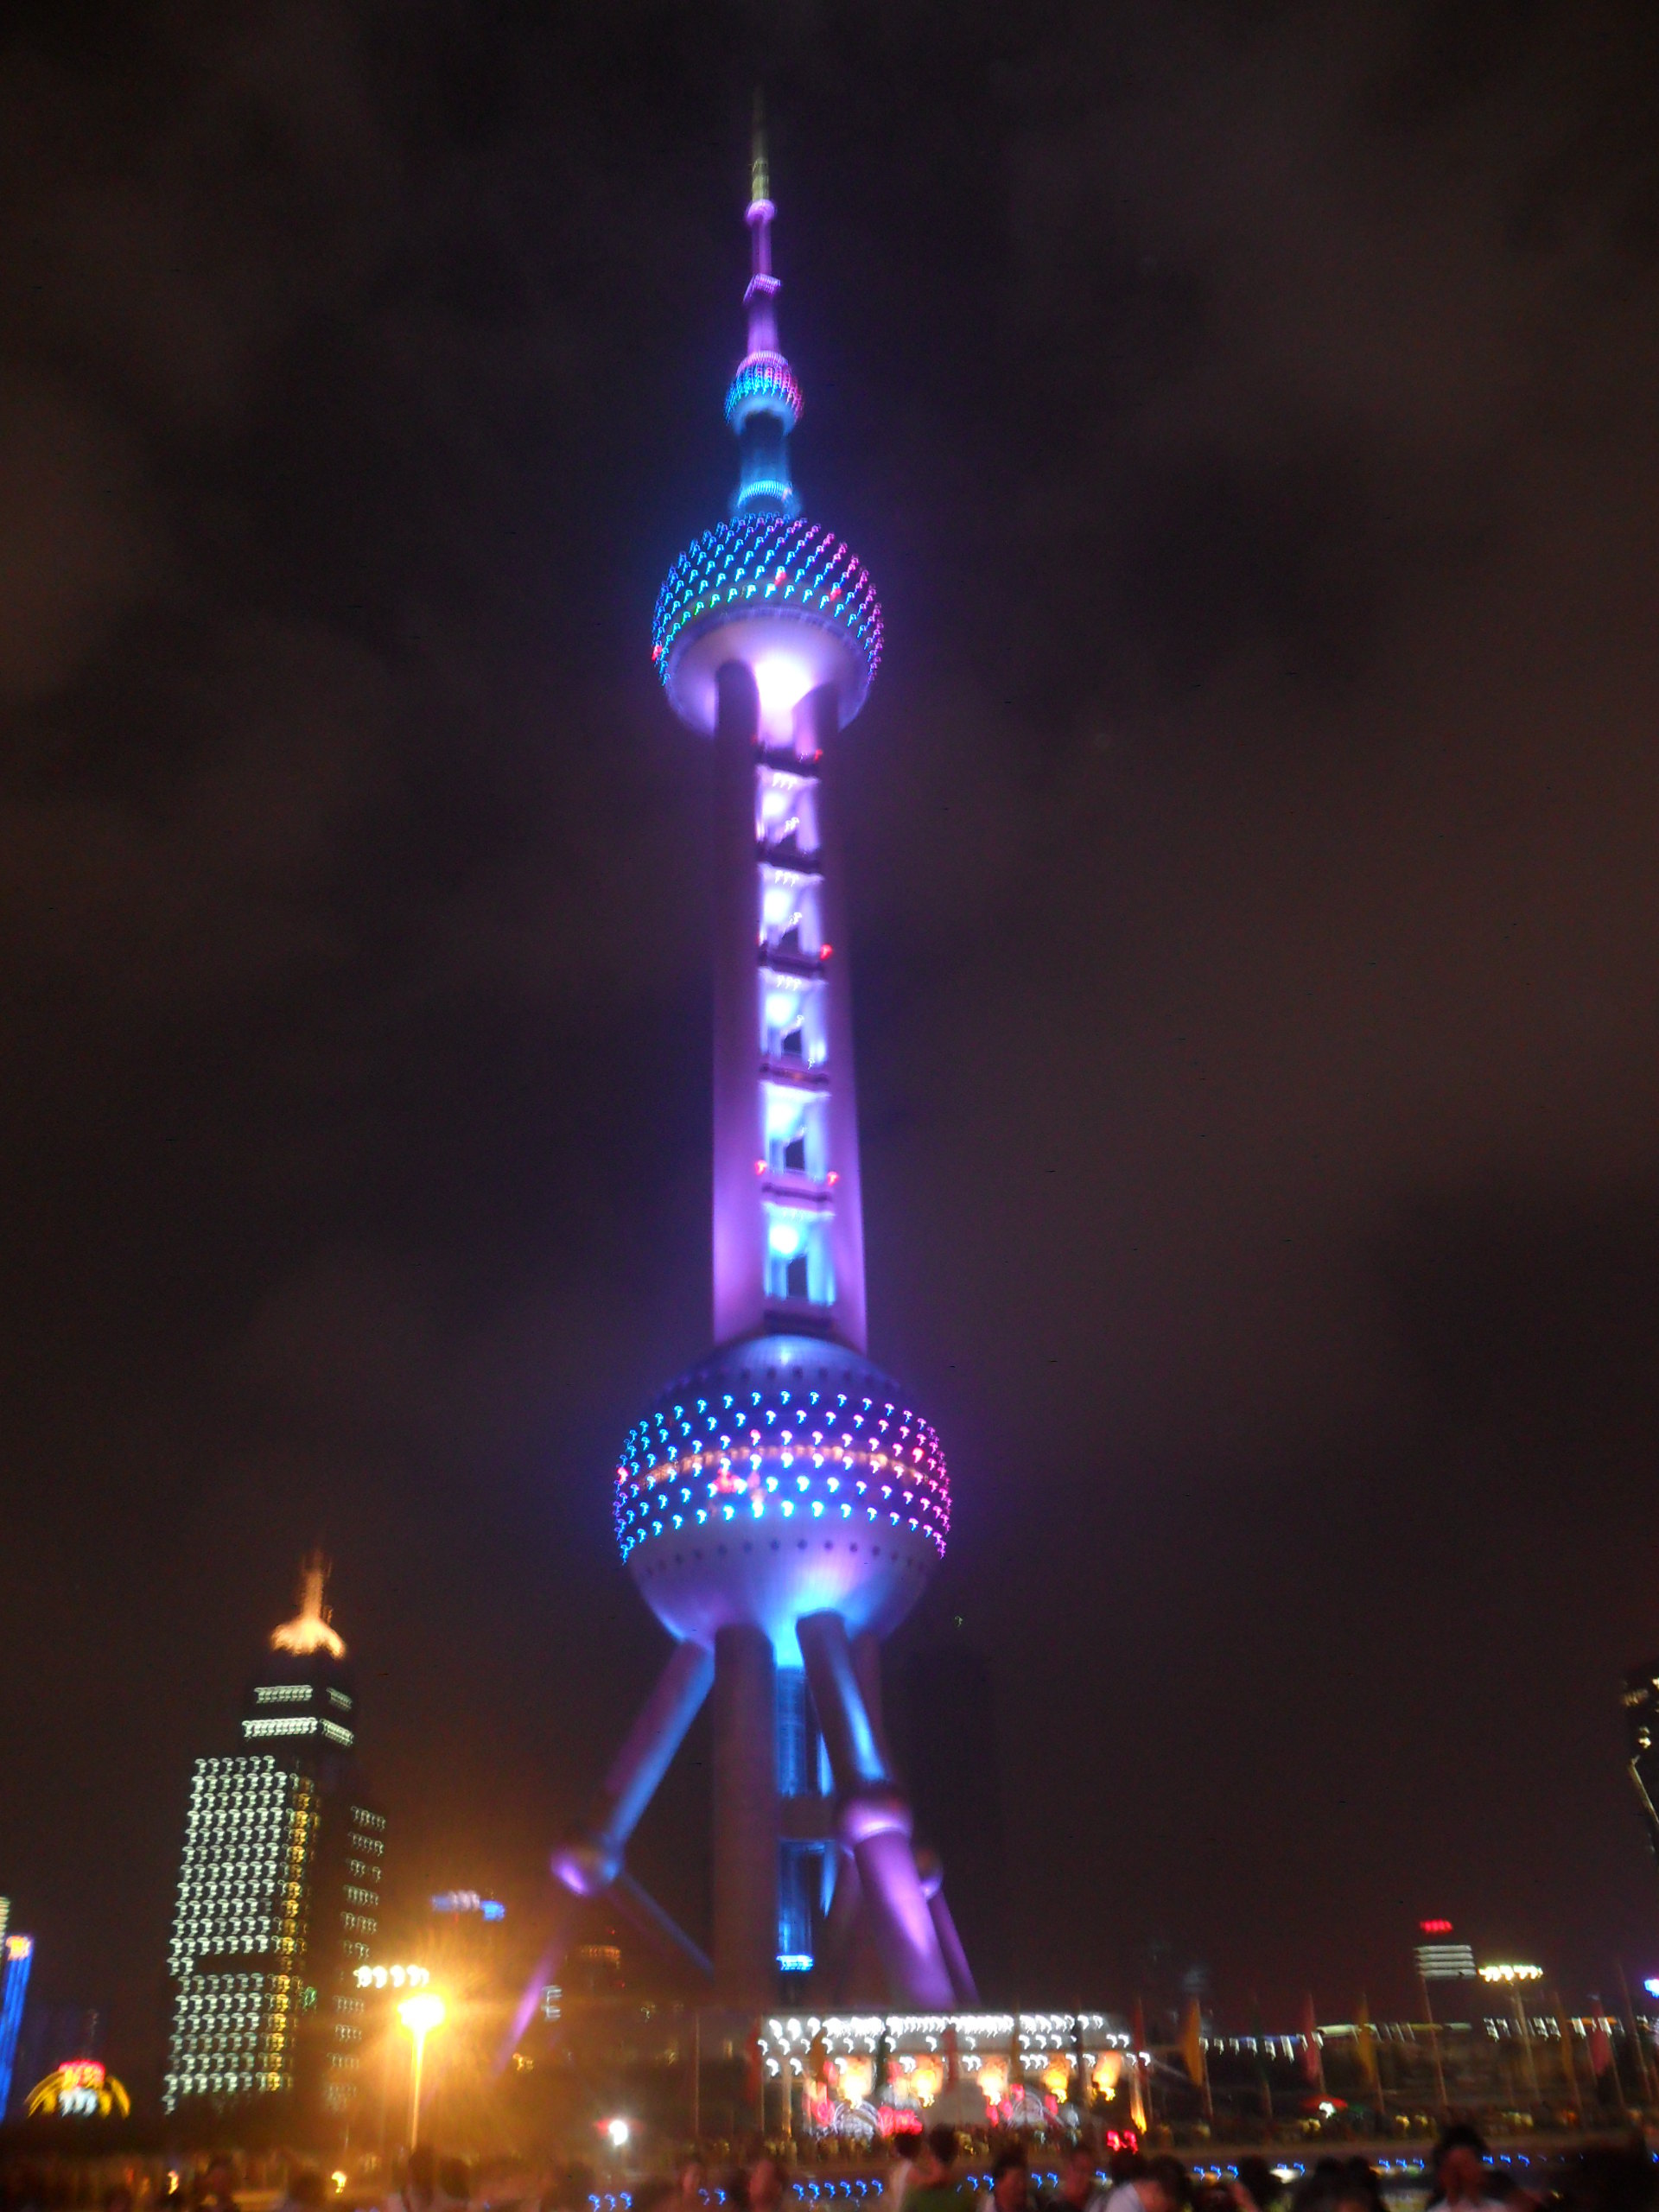 【携程攻略】上海东方明珠景点,东方明珠广播电视塔是上海的标志性文化景观之一，位于浦东新区陆家嘴…